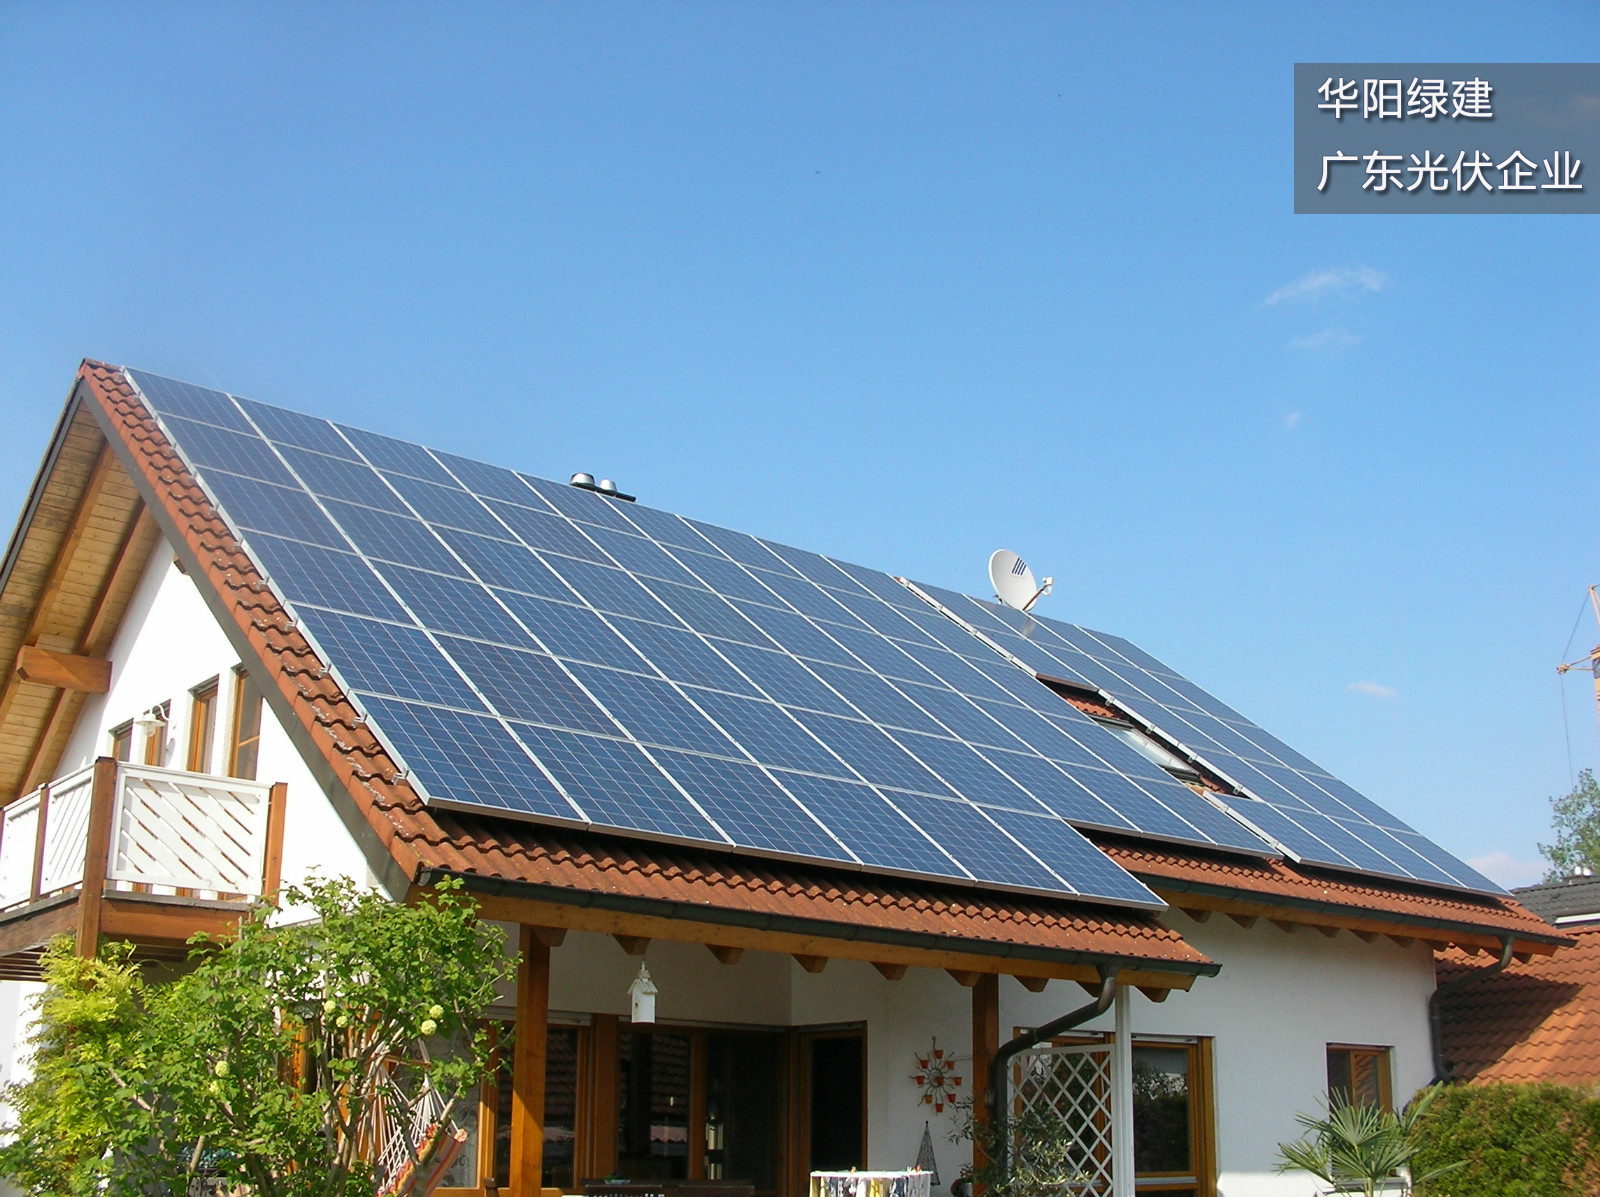 屋顶太阳能发电系统 光伏发电系统